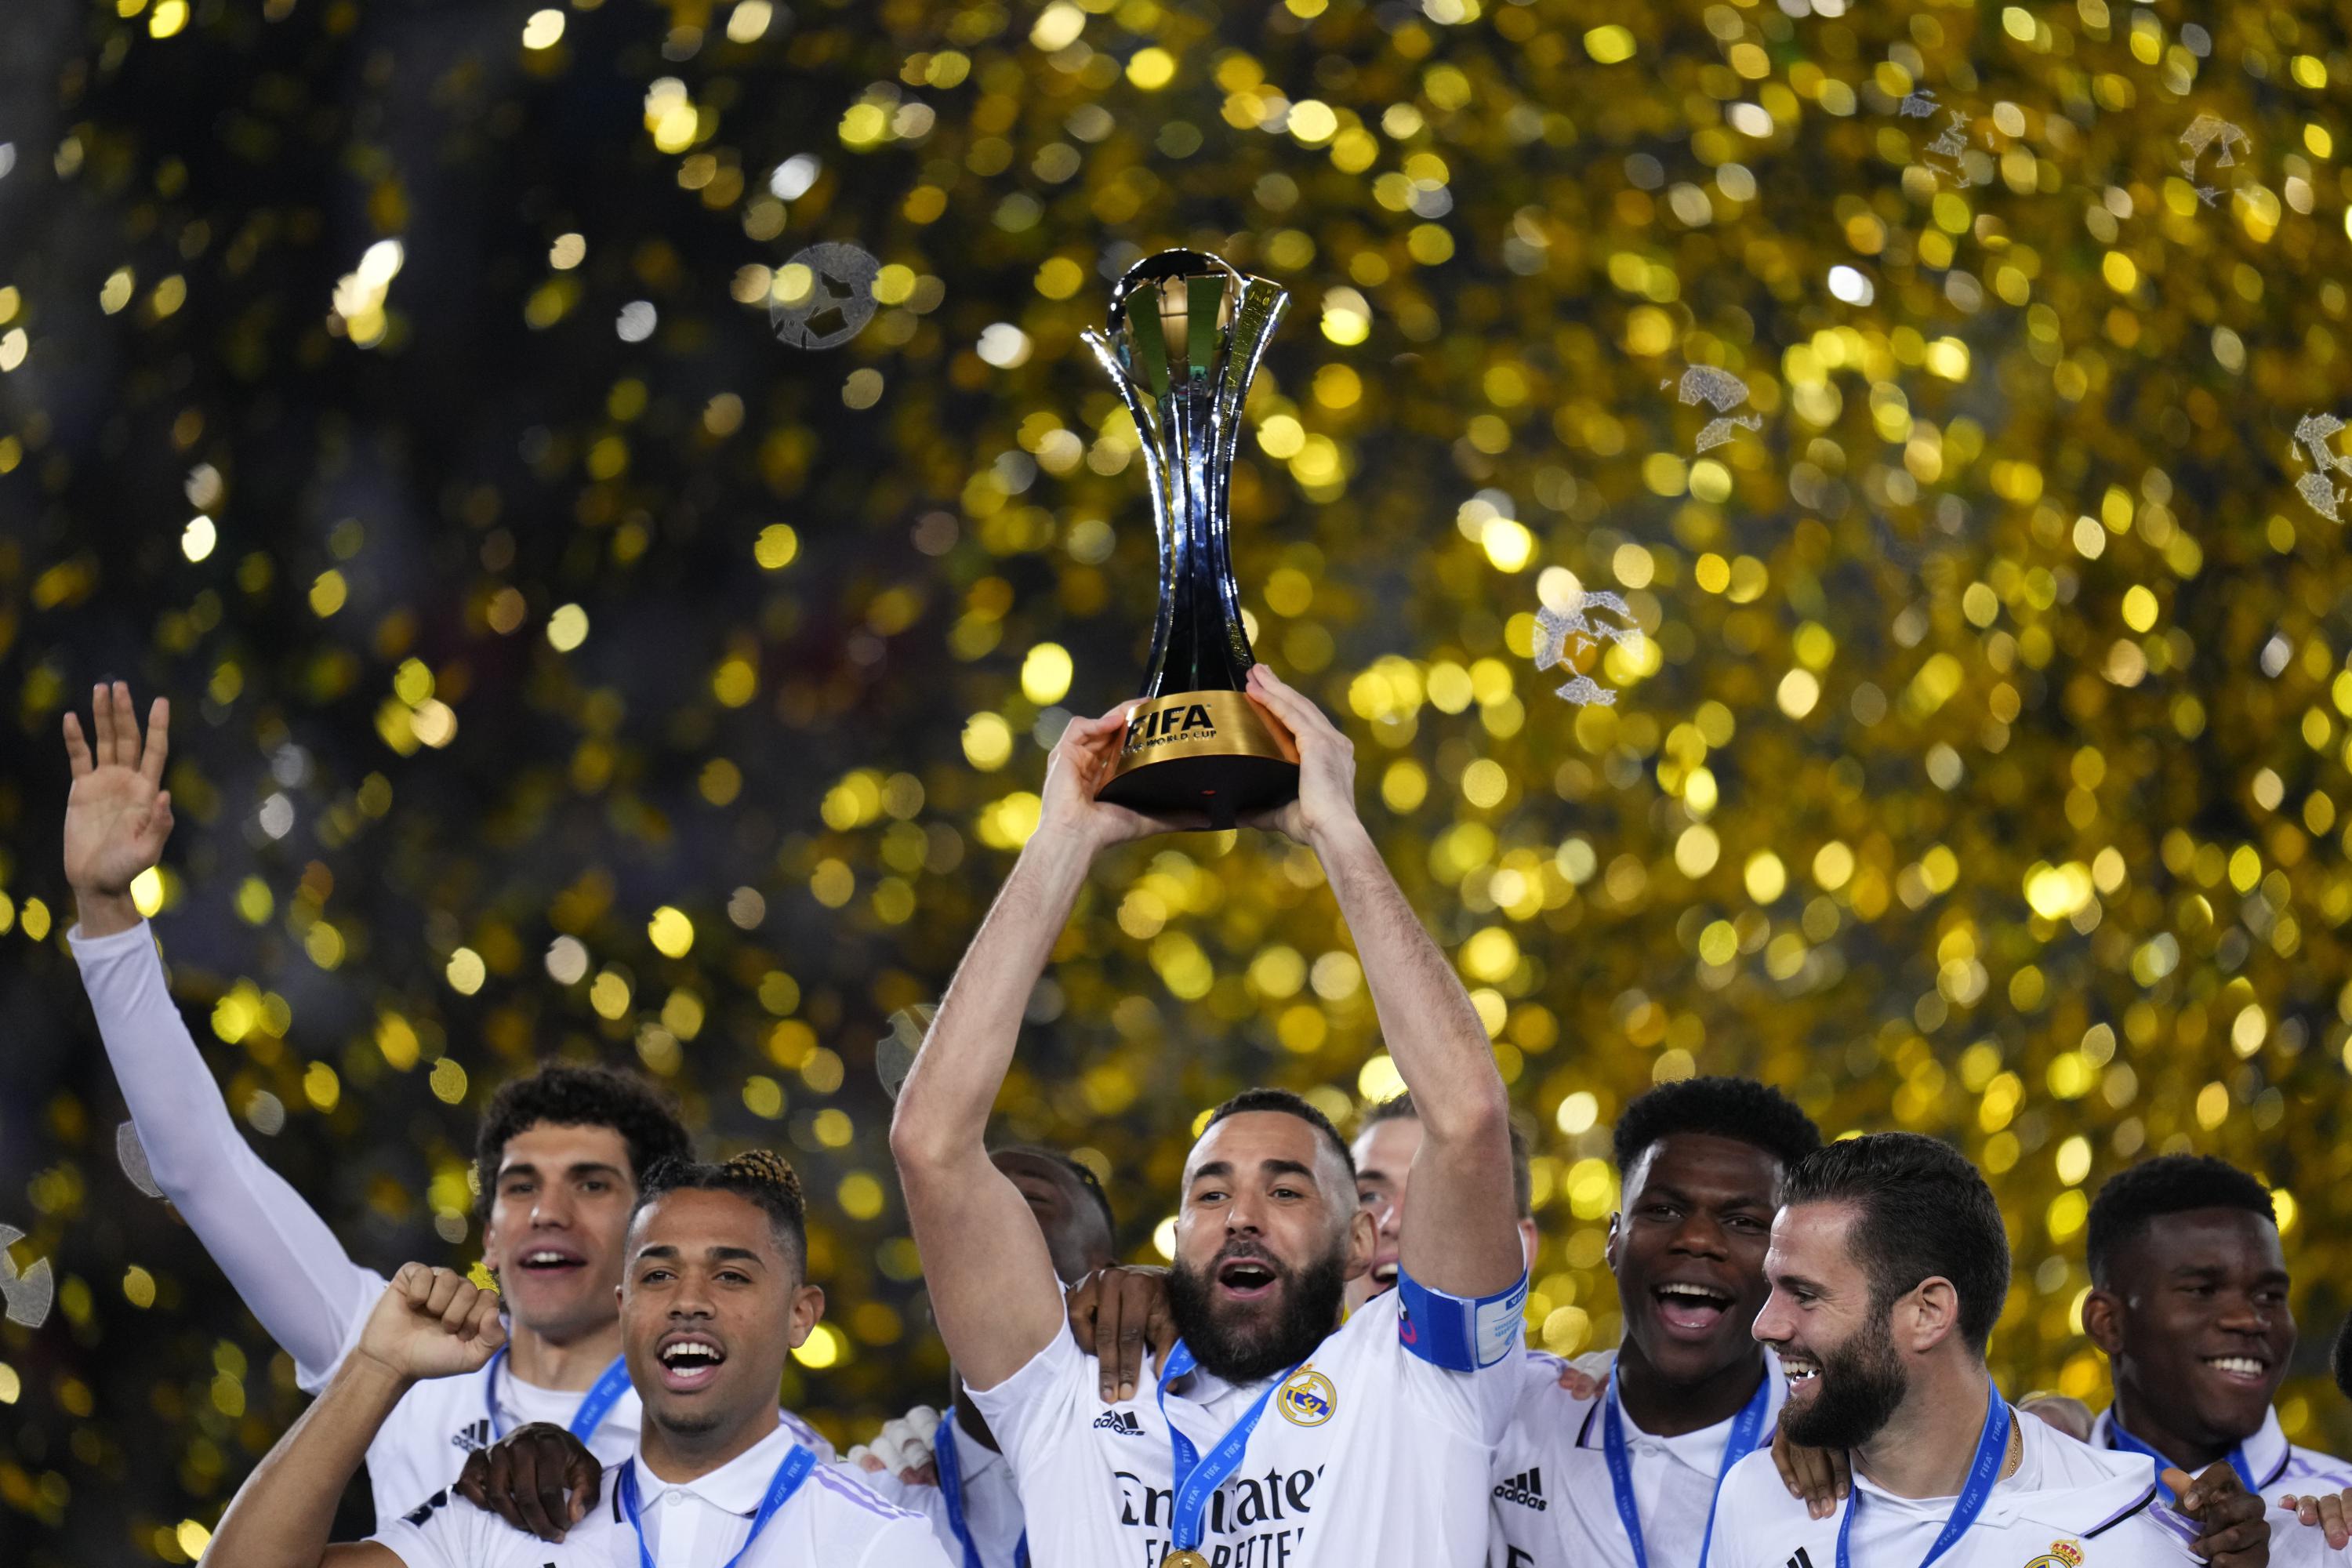 Real Madrid, campeão mundial pela oitava vez - AcheiUSA